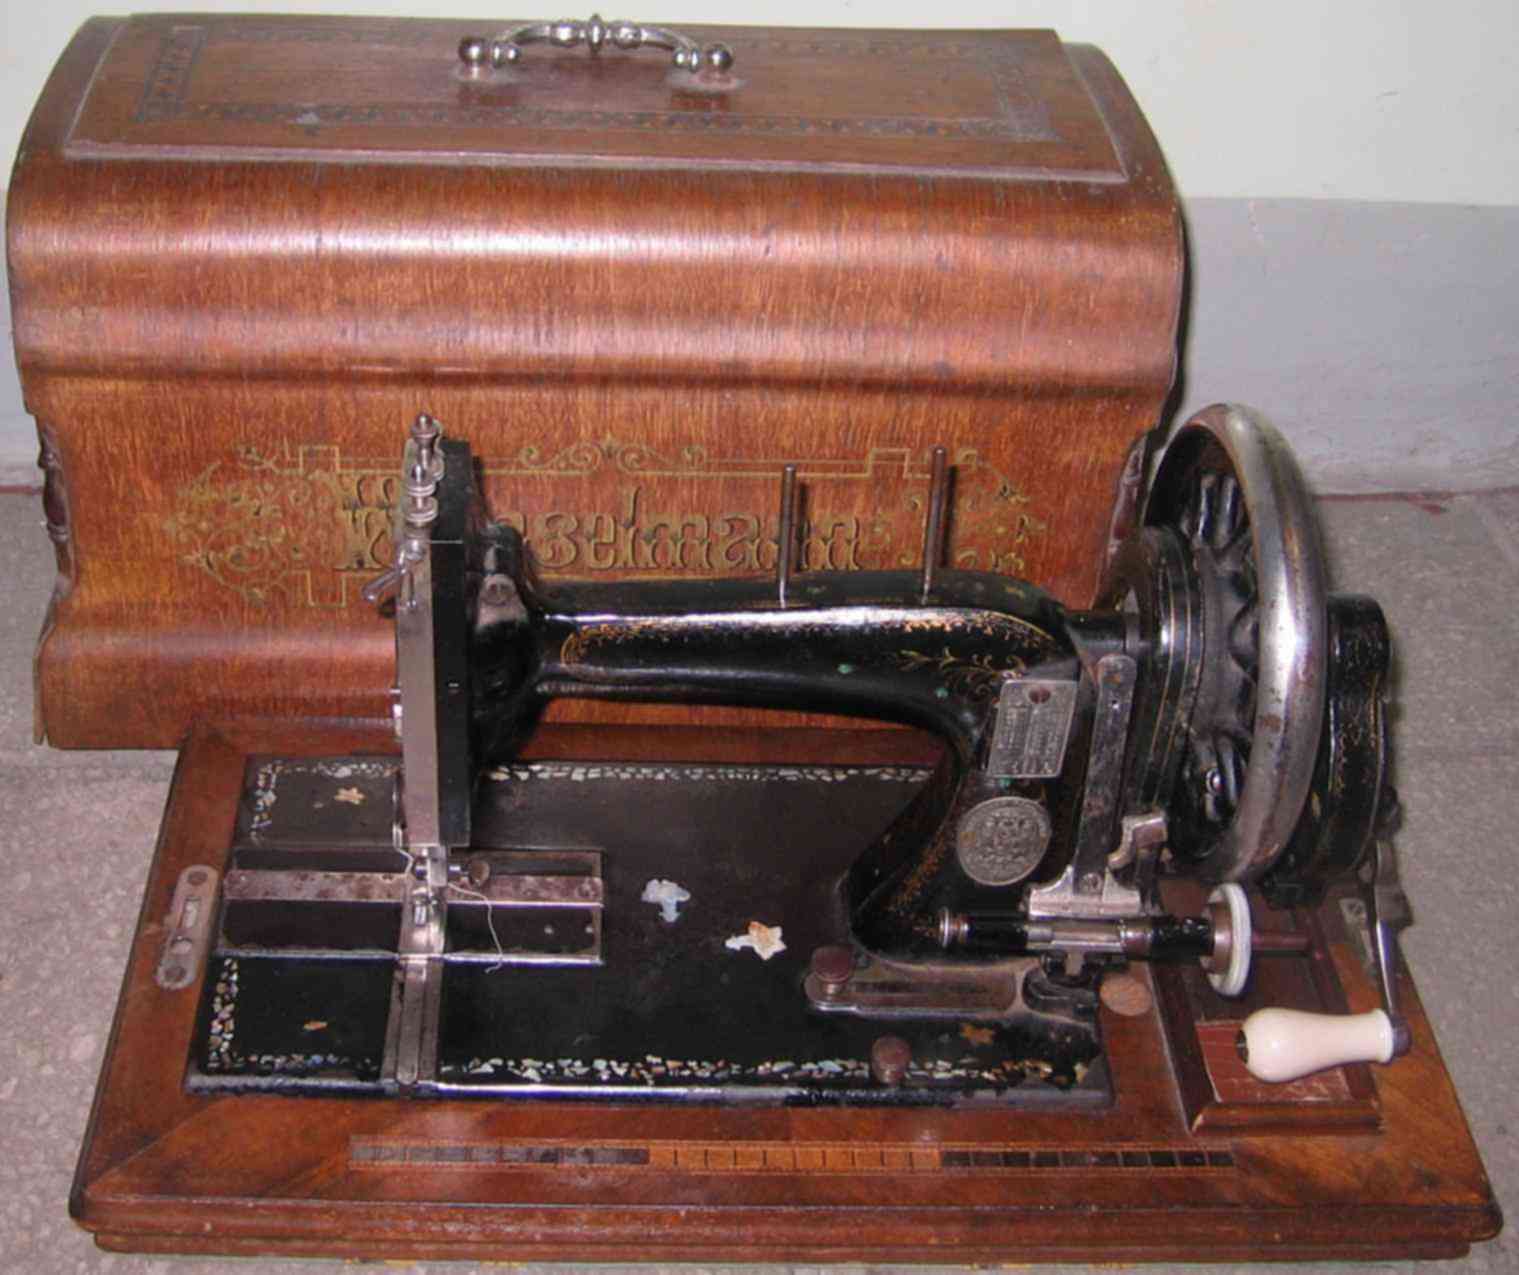 Купить старинную машинку. Раритетные Швейные машинки. Старинная швейная машинка. Швейная машинка Старая ручная. Швейная машинка старинная ручная.